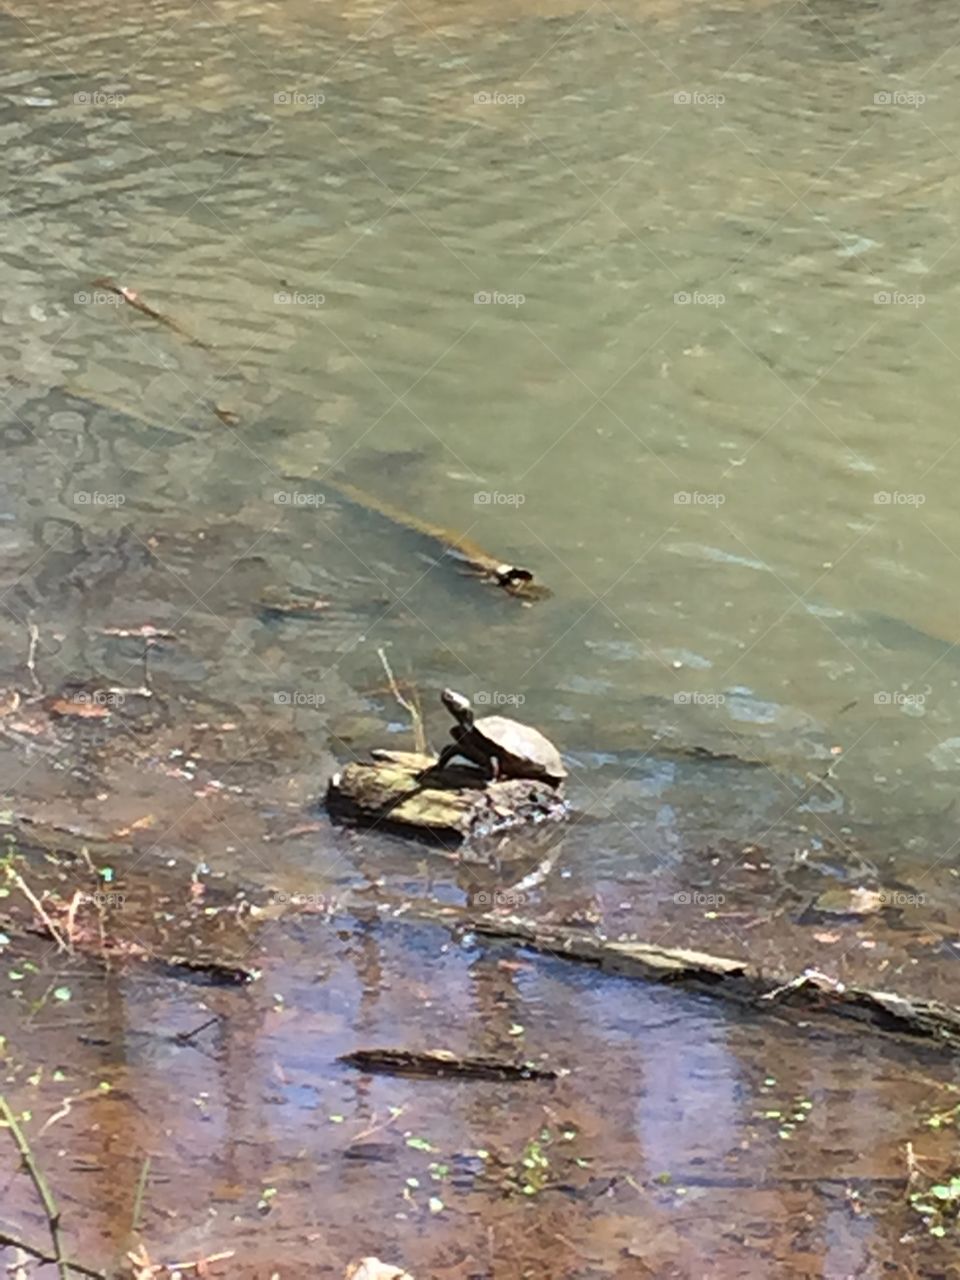 Sunbathing Turtle. A little turtle enjoying his rock in the sun